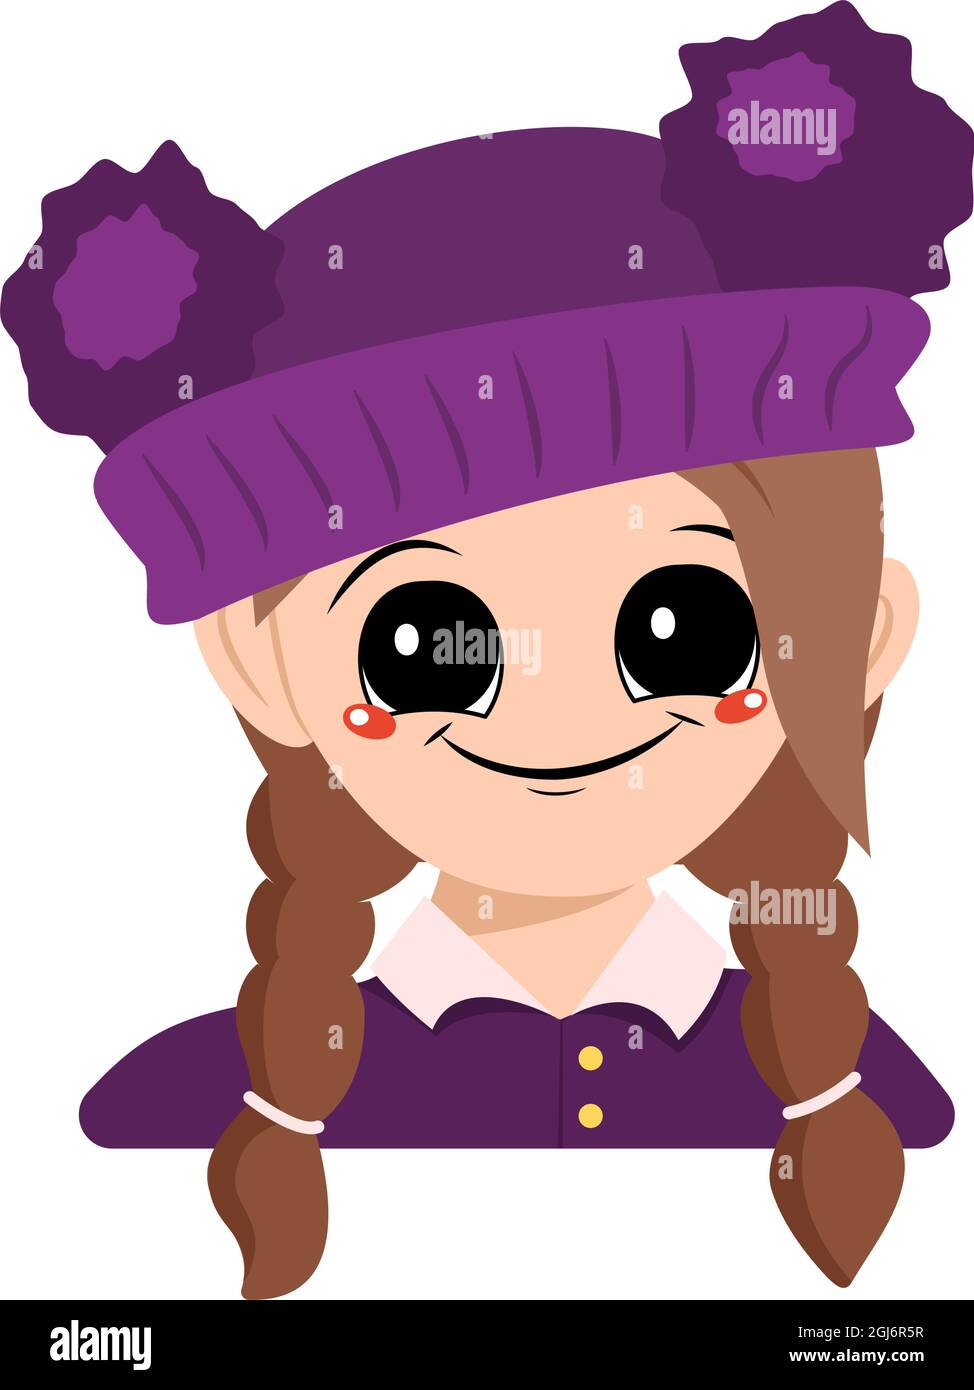 Avatar d'une fille avec de grands yeux et un grand sourire heureux dans un chapeau violet avec un pompon. Tête d'un enfant avec un visage joyeux Illustration de Vecteur